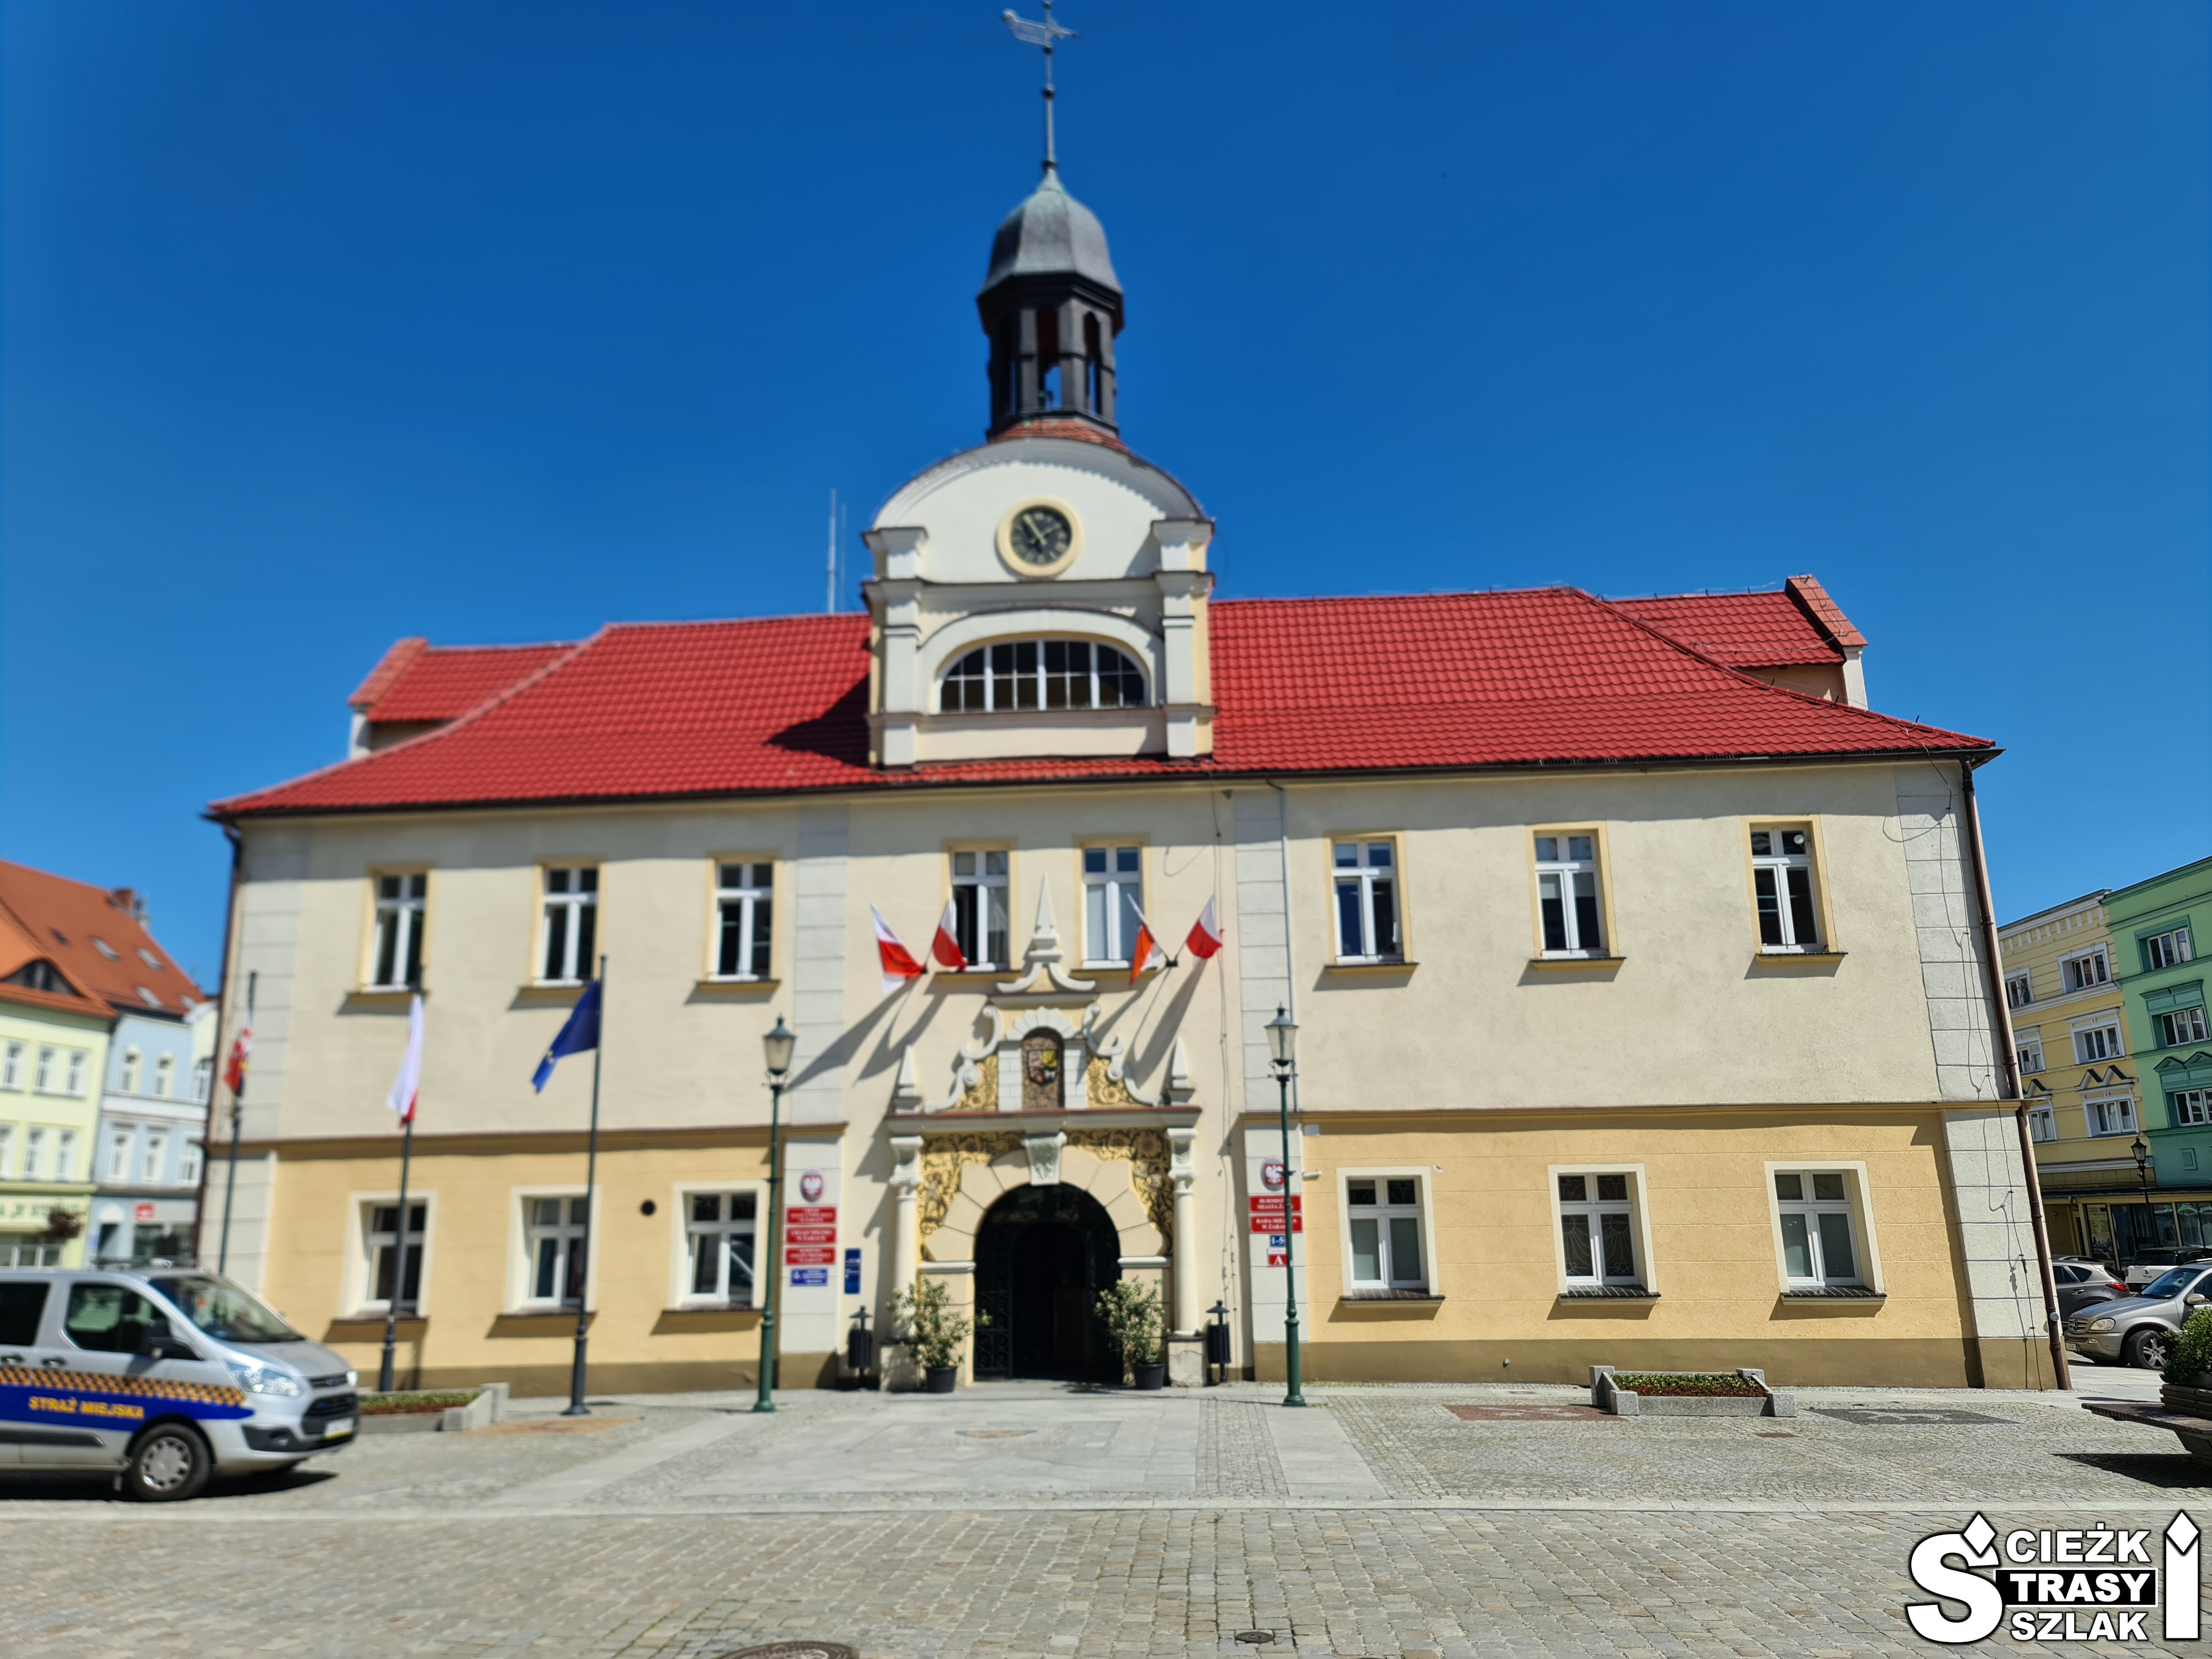 Zabytkowy ratusz w Żarach z czerwonym dachem w Starym mieście w pobliżu Zamku i pałacu Dewinów-Bibersteinów